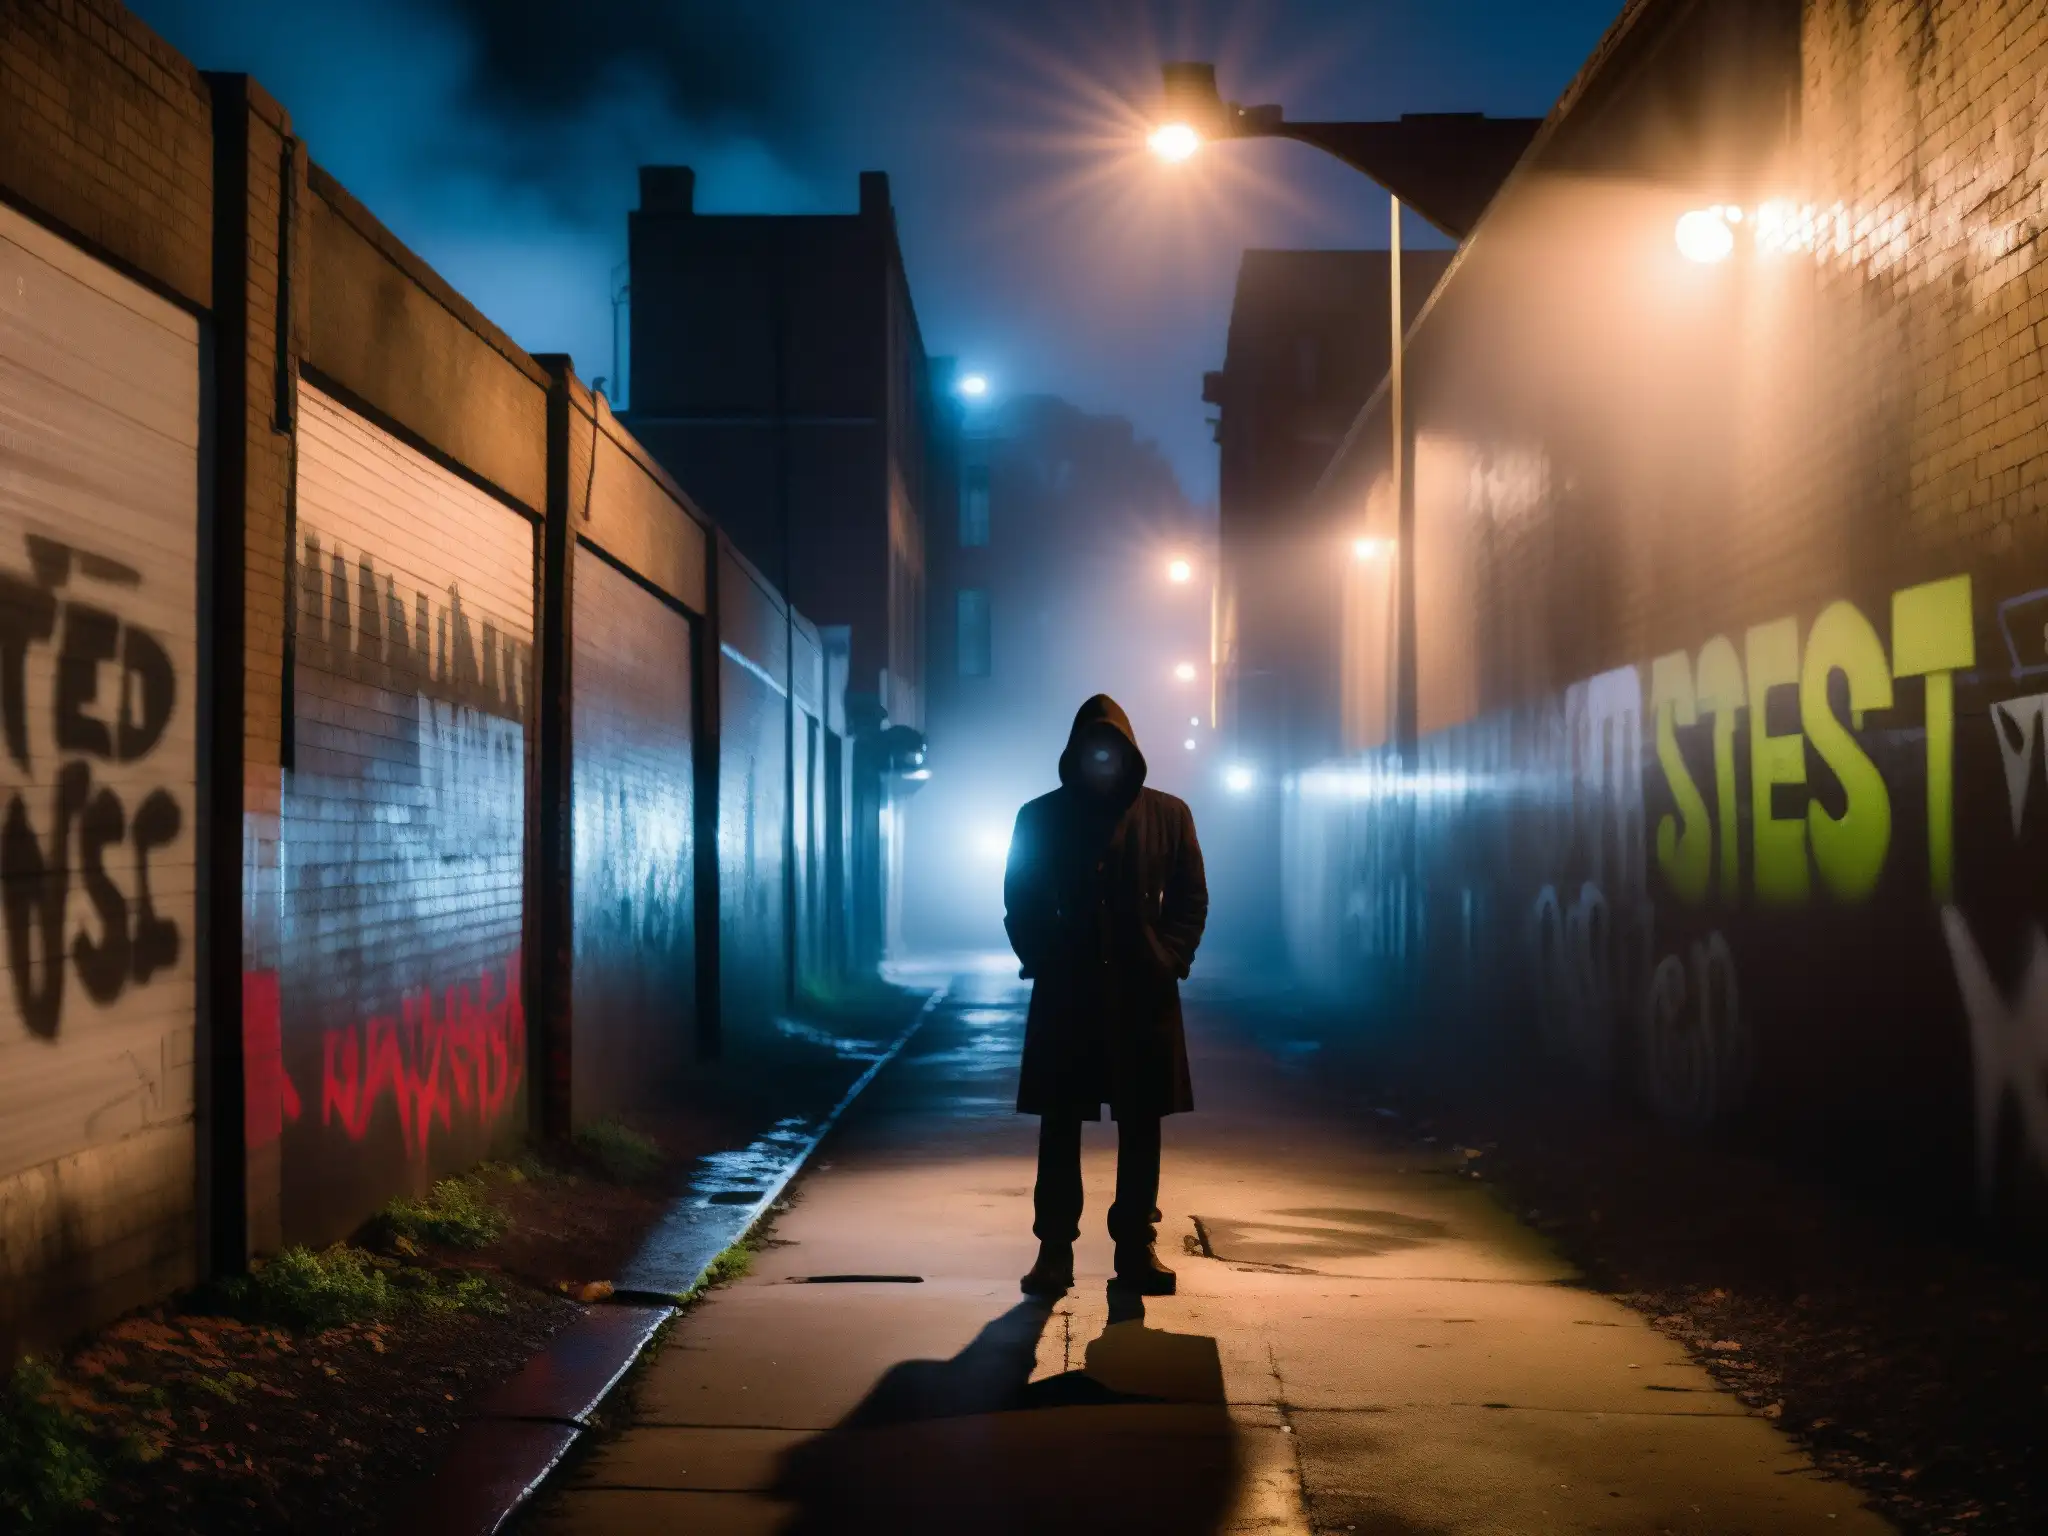 Un callejón sombrío de noche, con figuras monstruosas en grafitis